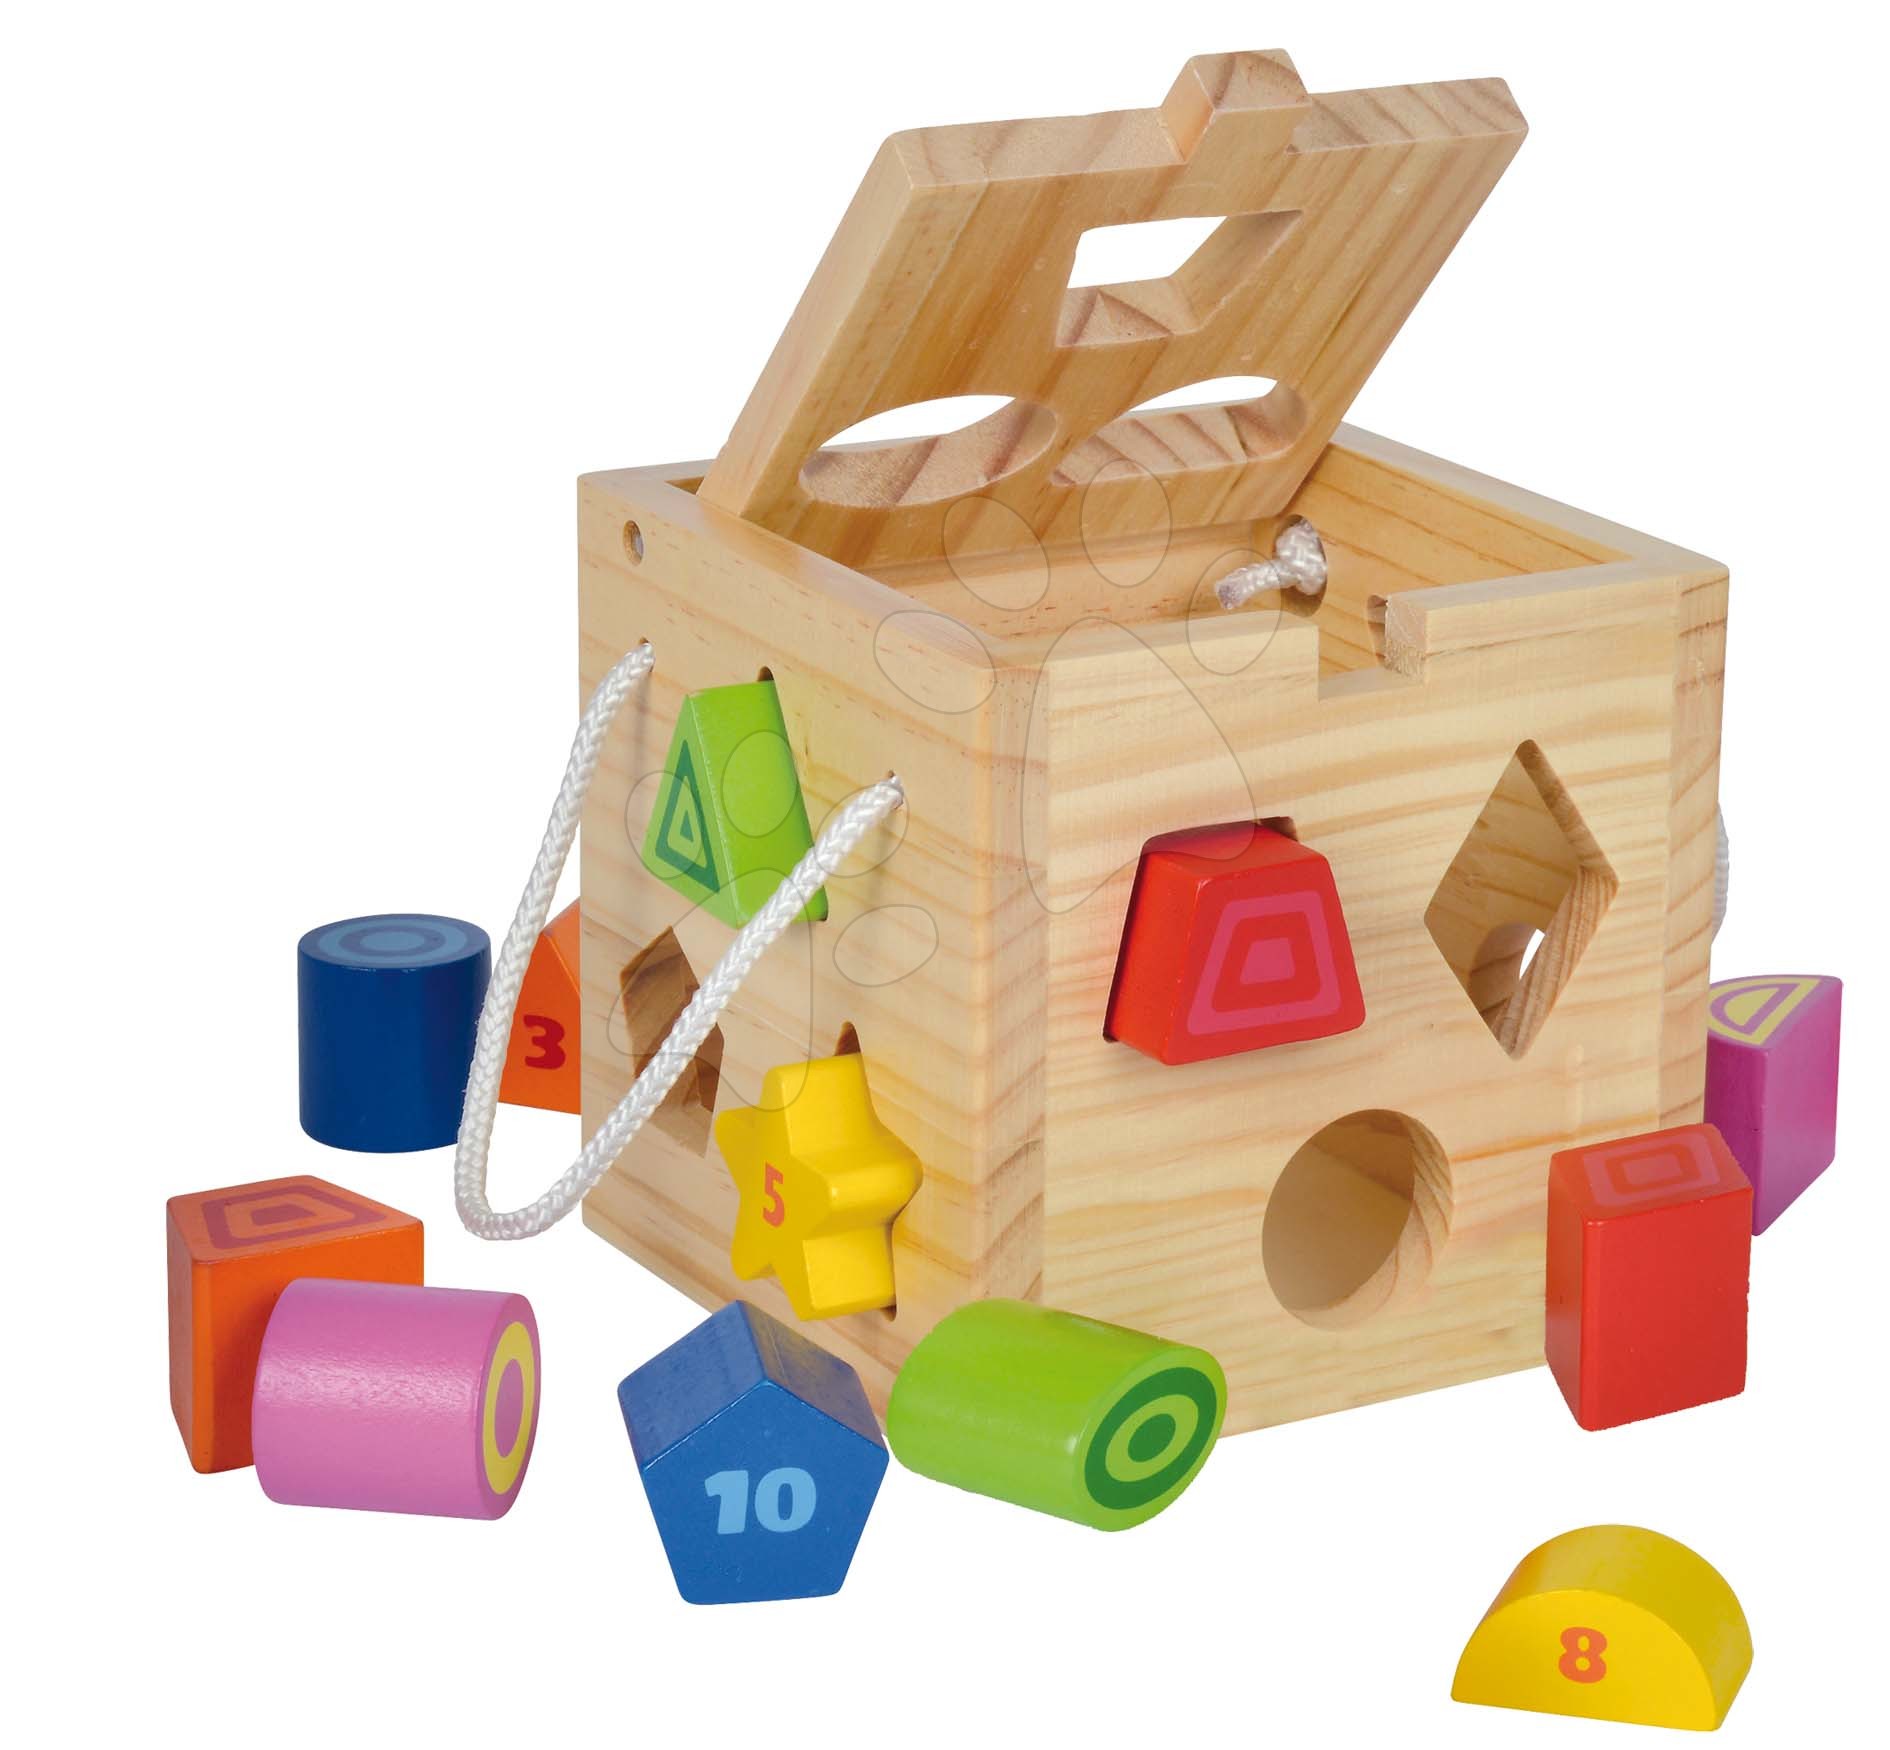 Drevené didaktické hračky - Drevená didaktická kocka Shape Sorting Cube Eichhorn s 12 vkladacími kockami od 12 mes